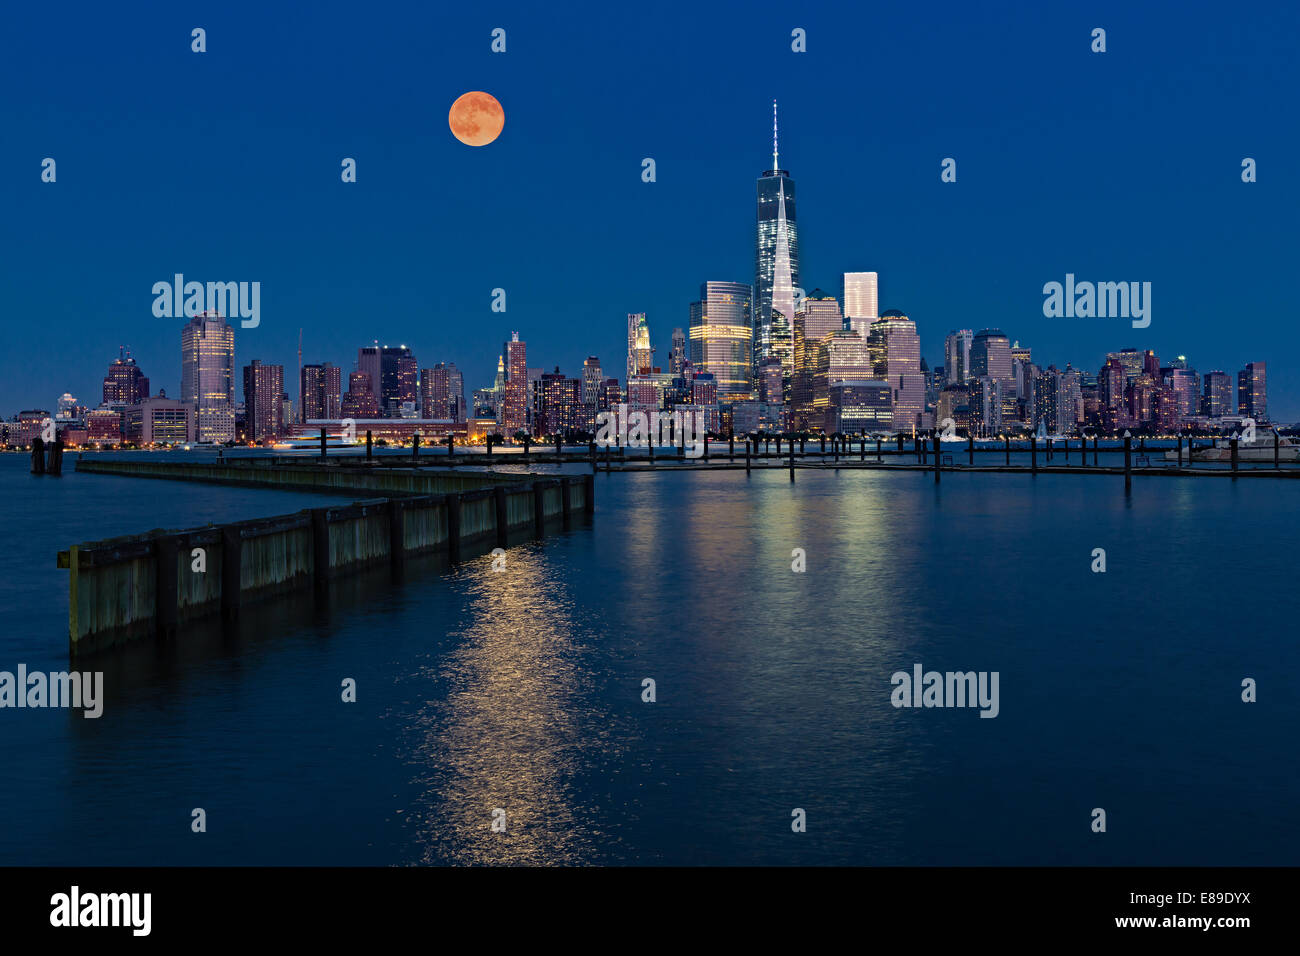 La super luna sorge oltre i grattacieli illuminati nella parte inferiore dello skyline di Manhattan lungo One World Trade Center. Foto Stock